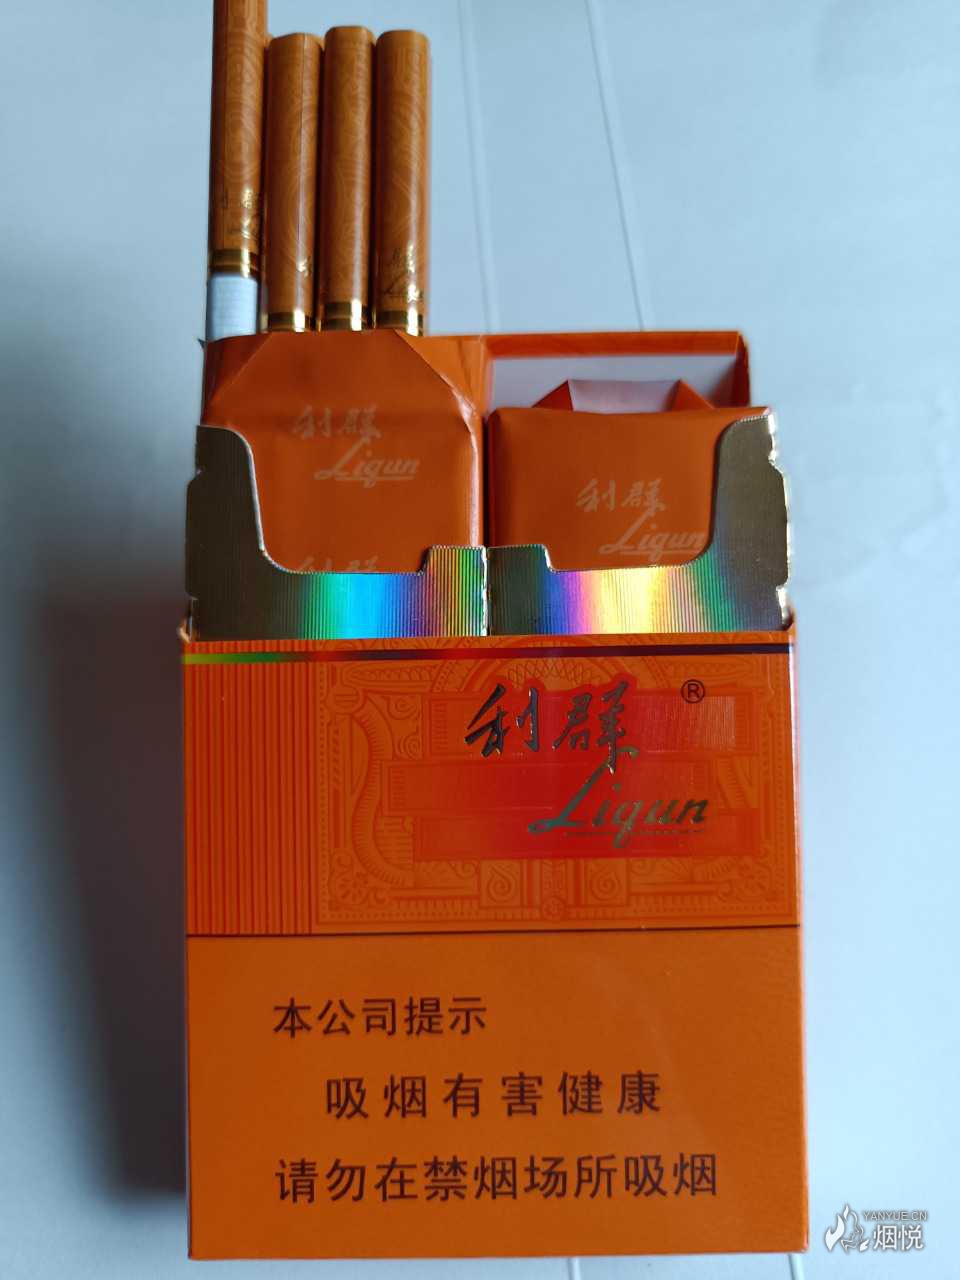 利群橙色香烟的价格图片